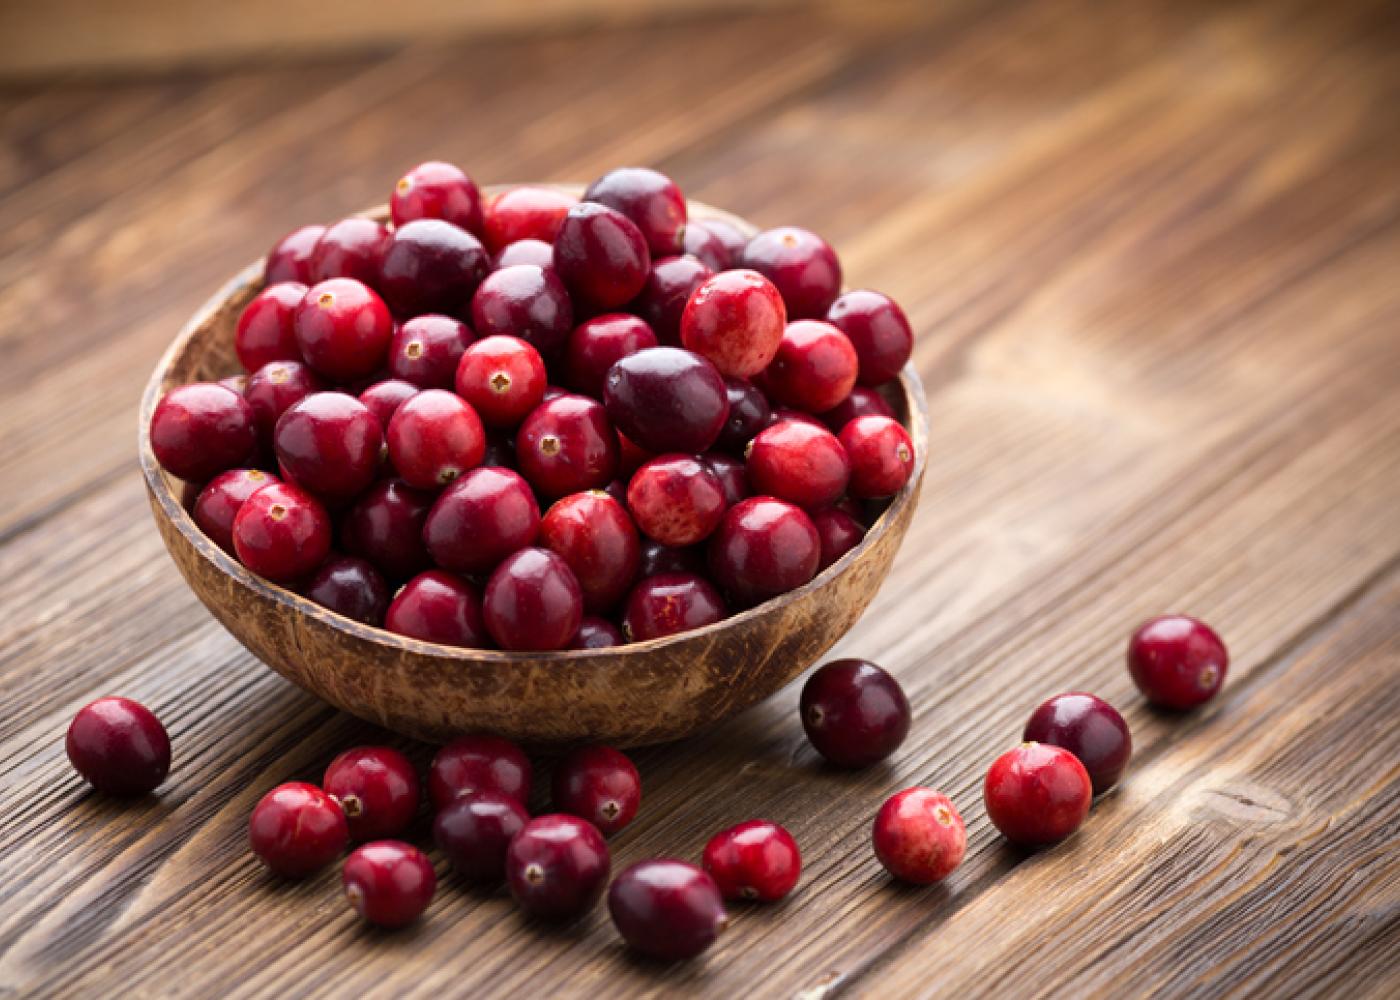 Health benefits of cranberry juice